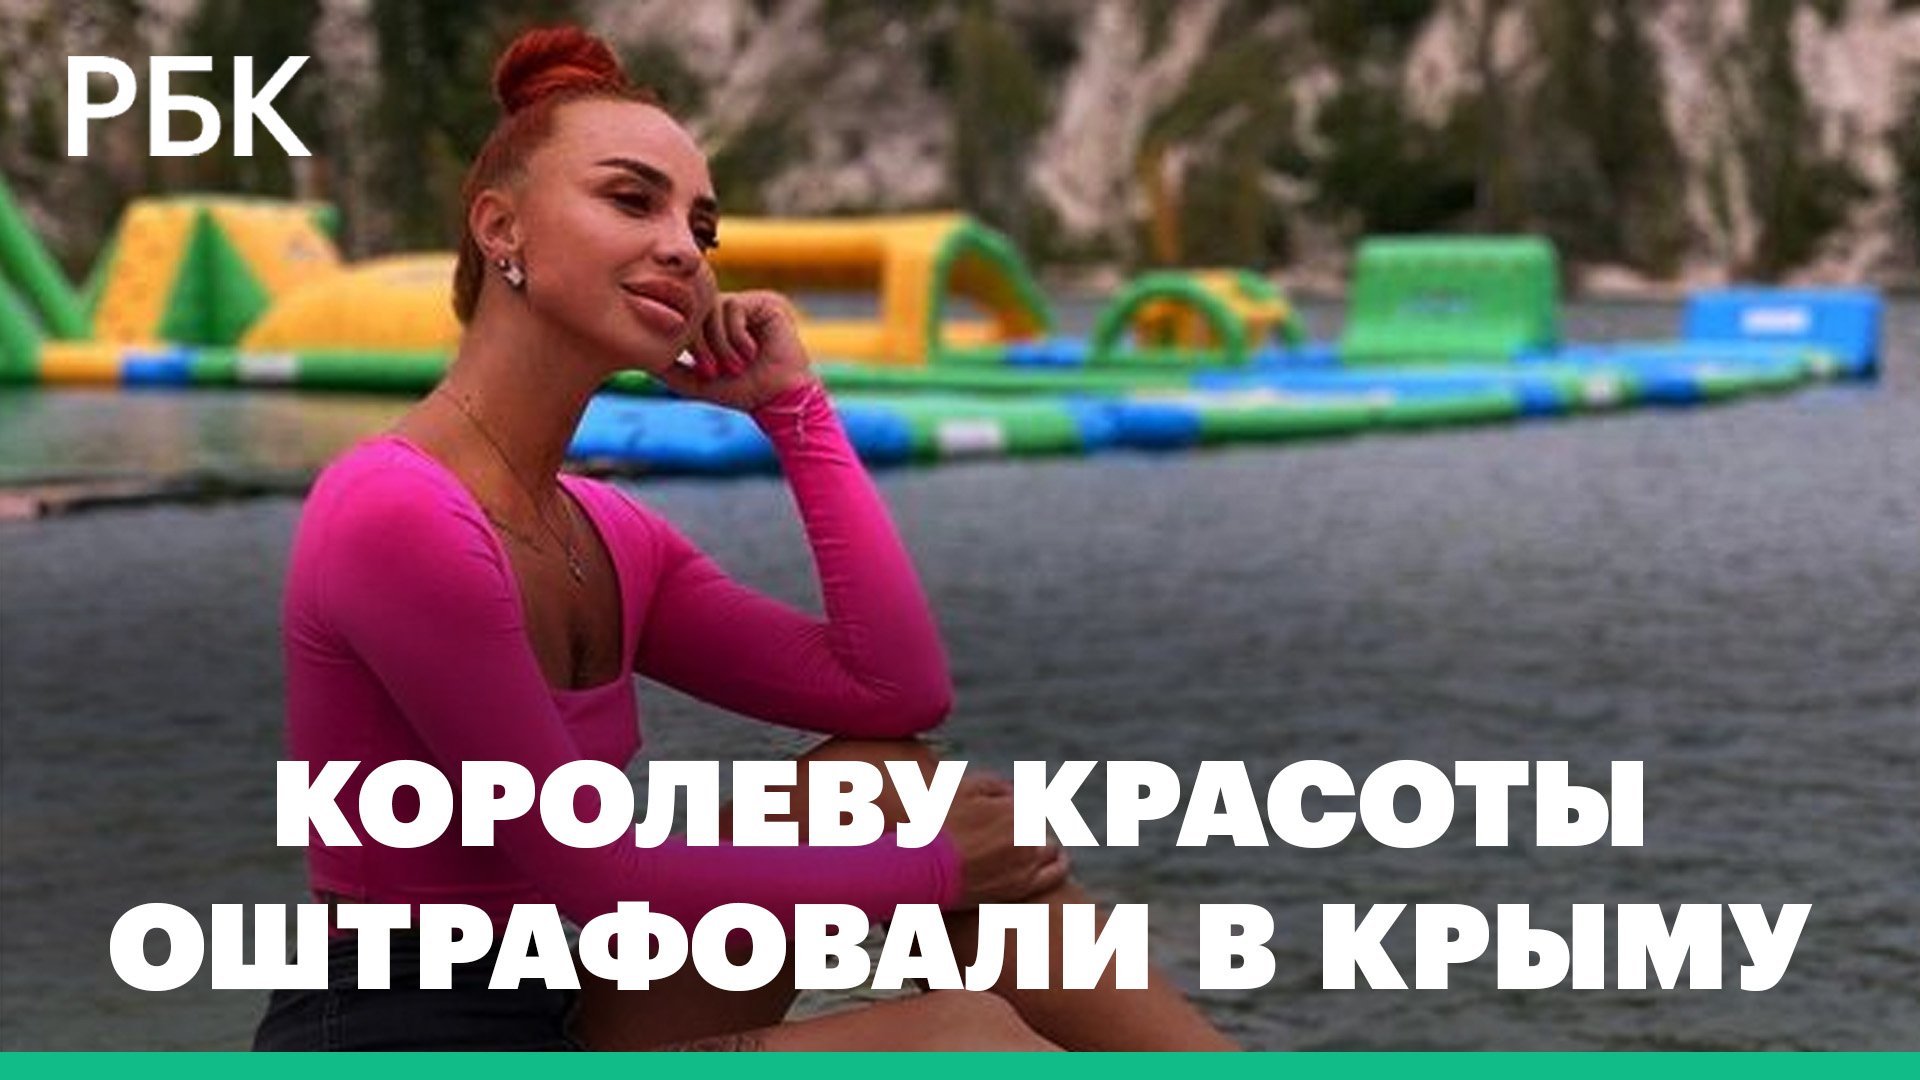 Победительницу крымского конкурса красоты оштрафовали за песню. Ее подругу арестовали